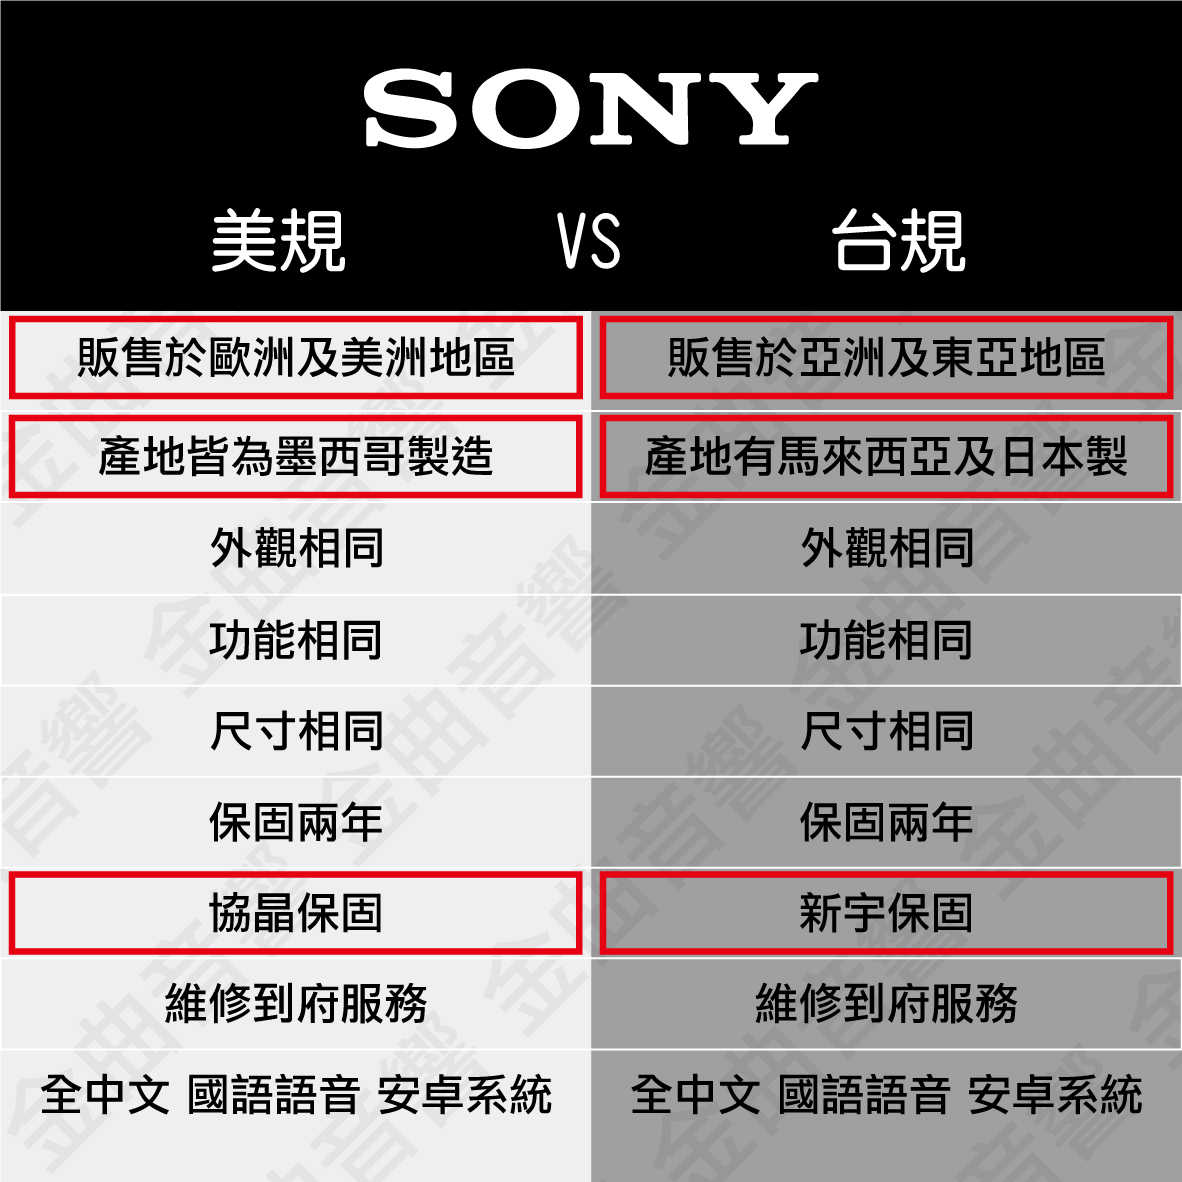 SONY 索尼 55吋 XR-55X90J 美規 4K 全陣列LED XR 液晶 電視 2021 | 金曲音響